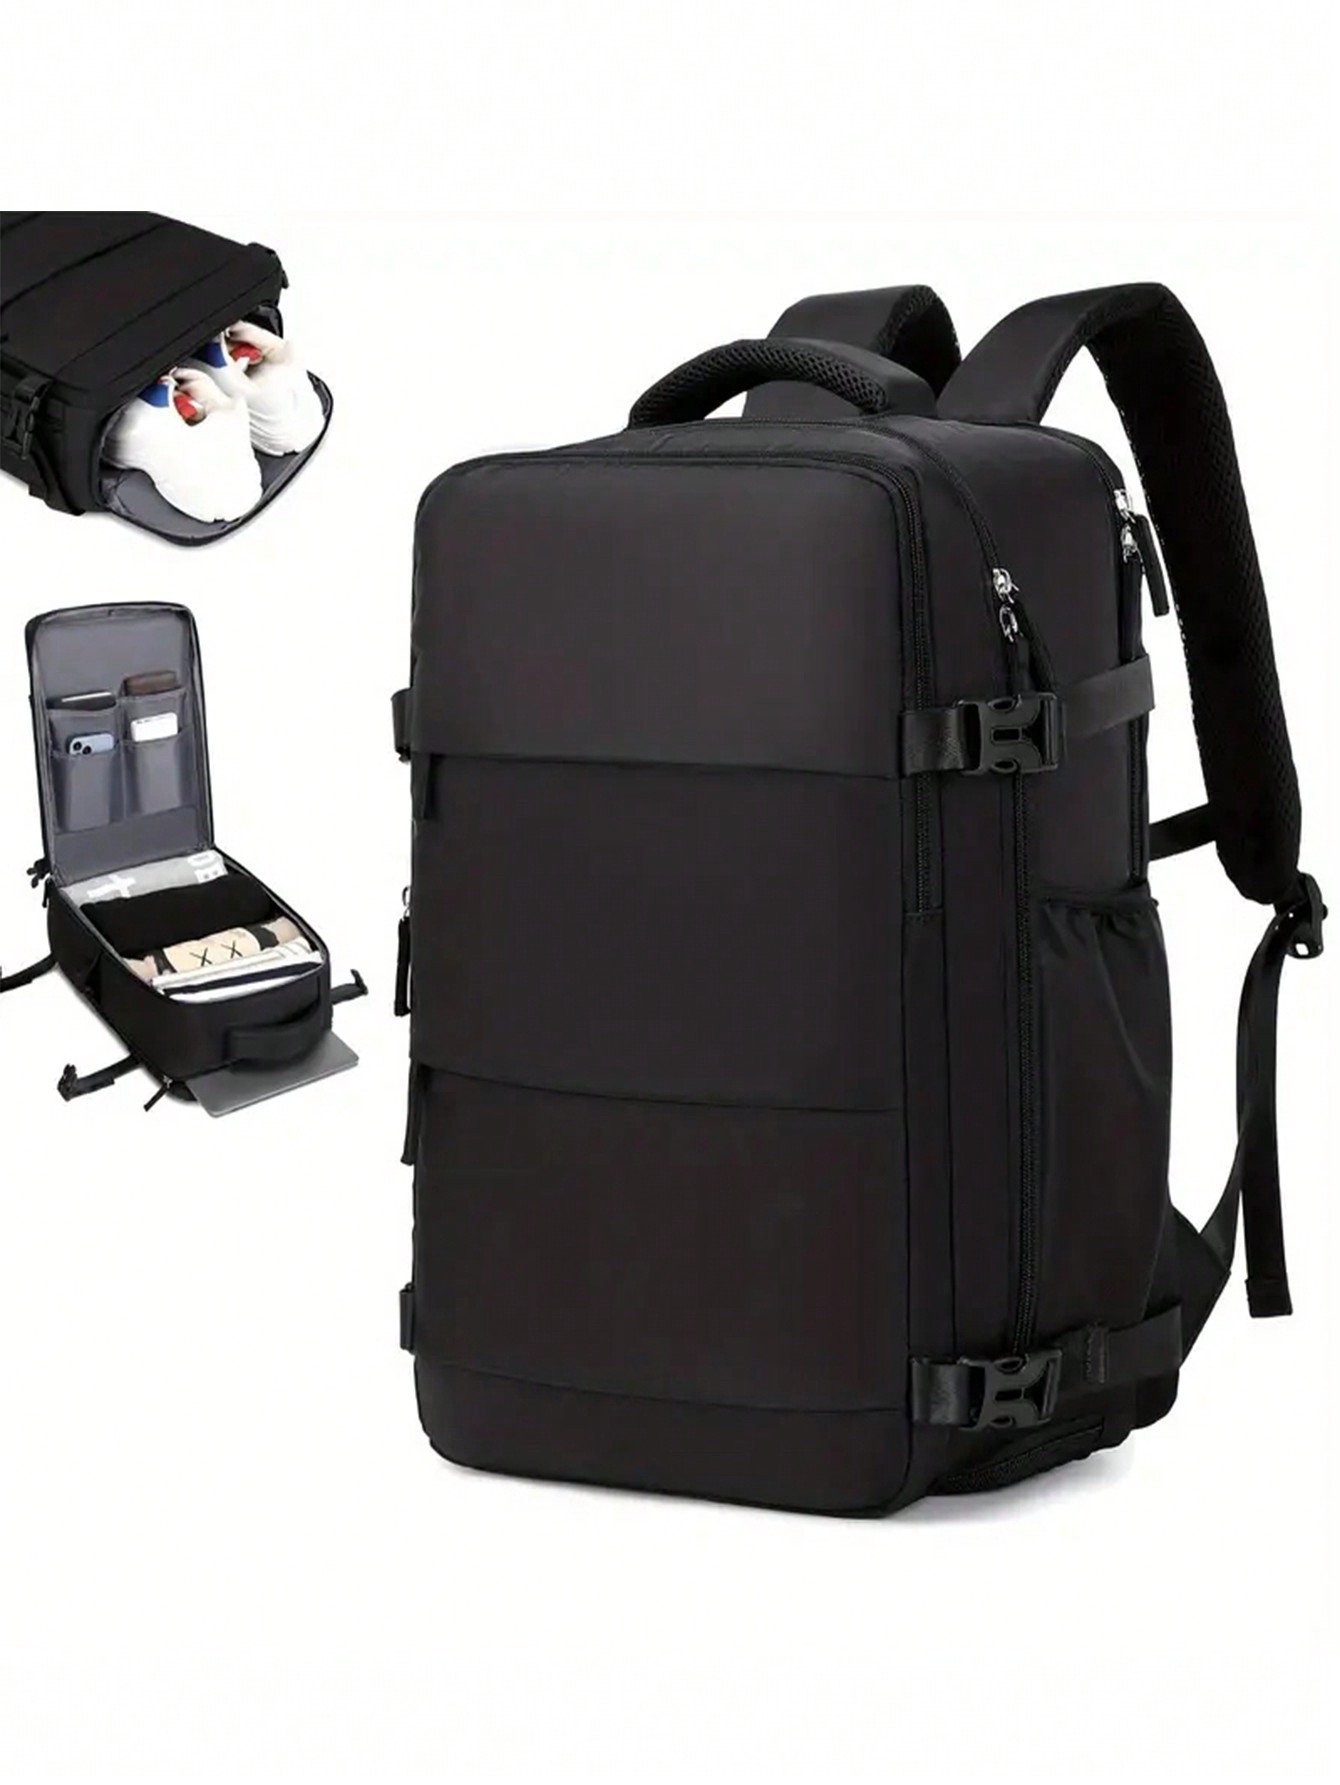 Розовая многофункциональная дорожная сумка большой емкости с молнией сверху, черный детский рюкзак для подгузников с usb портом для зарядки изолированная сумка с кабелем большой вместительный рюкзак сумки для подгузников